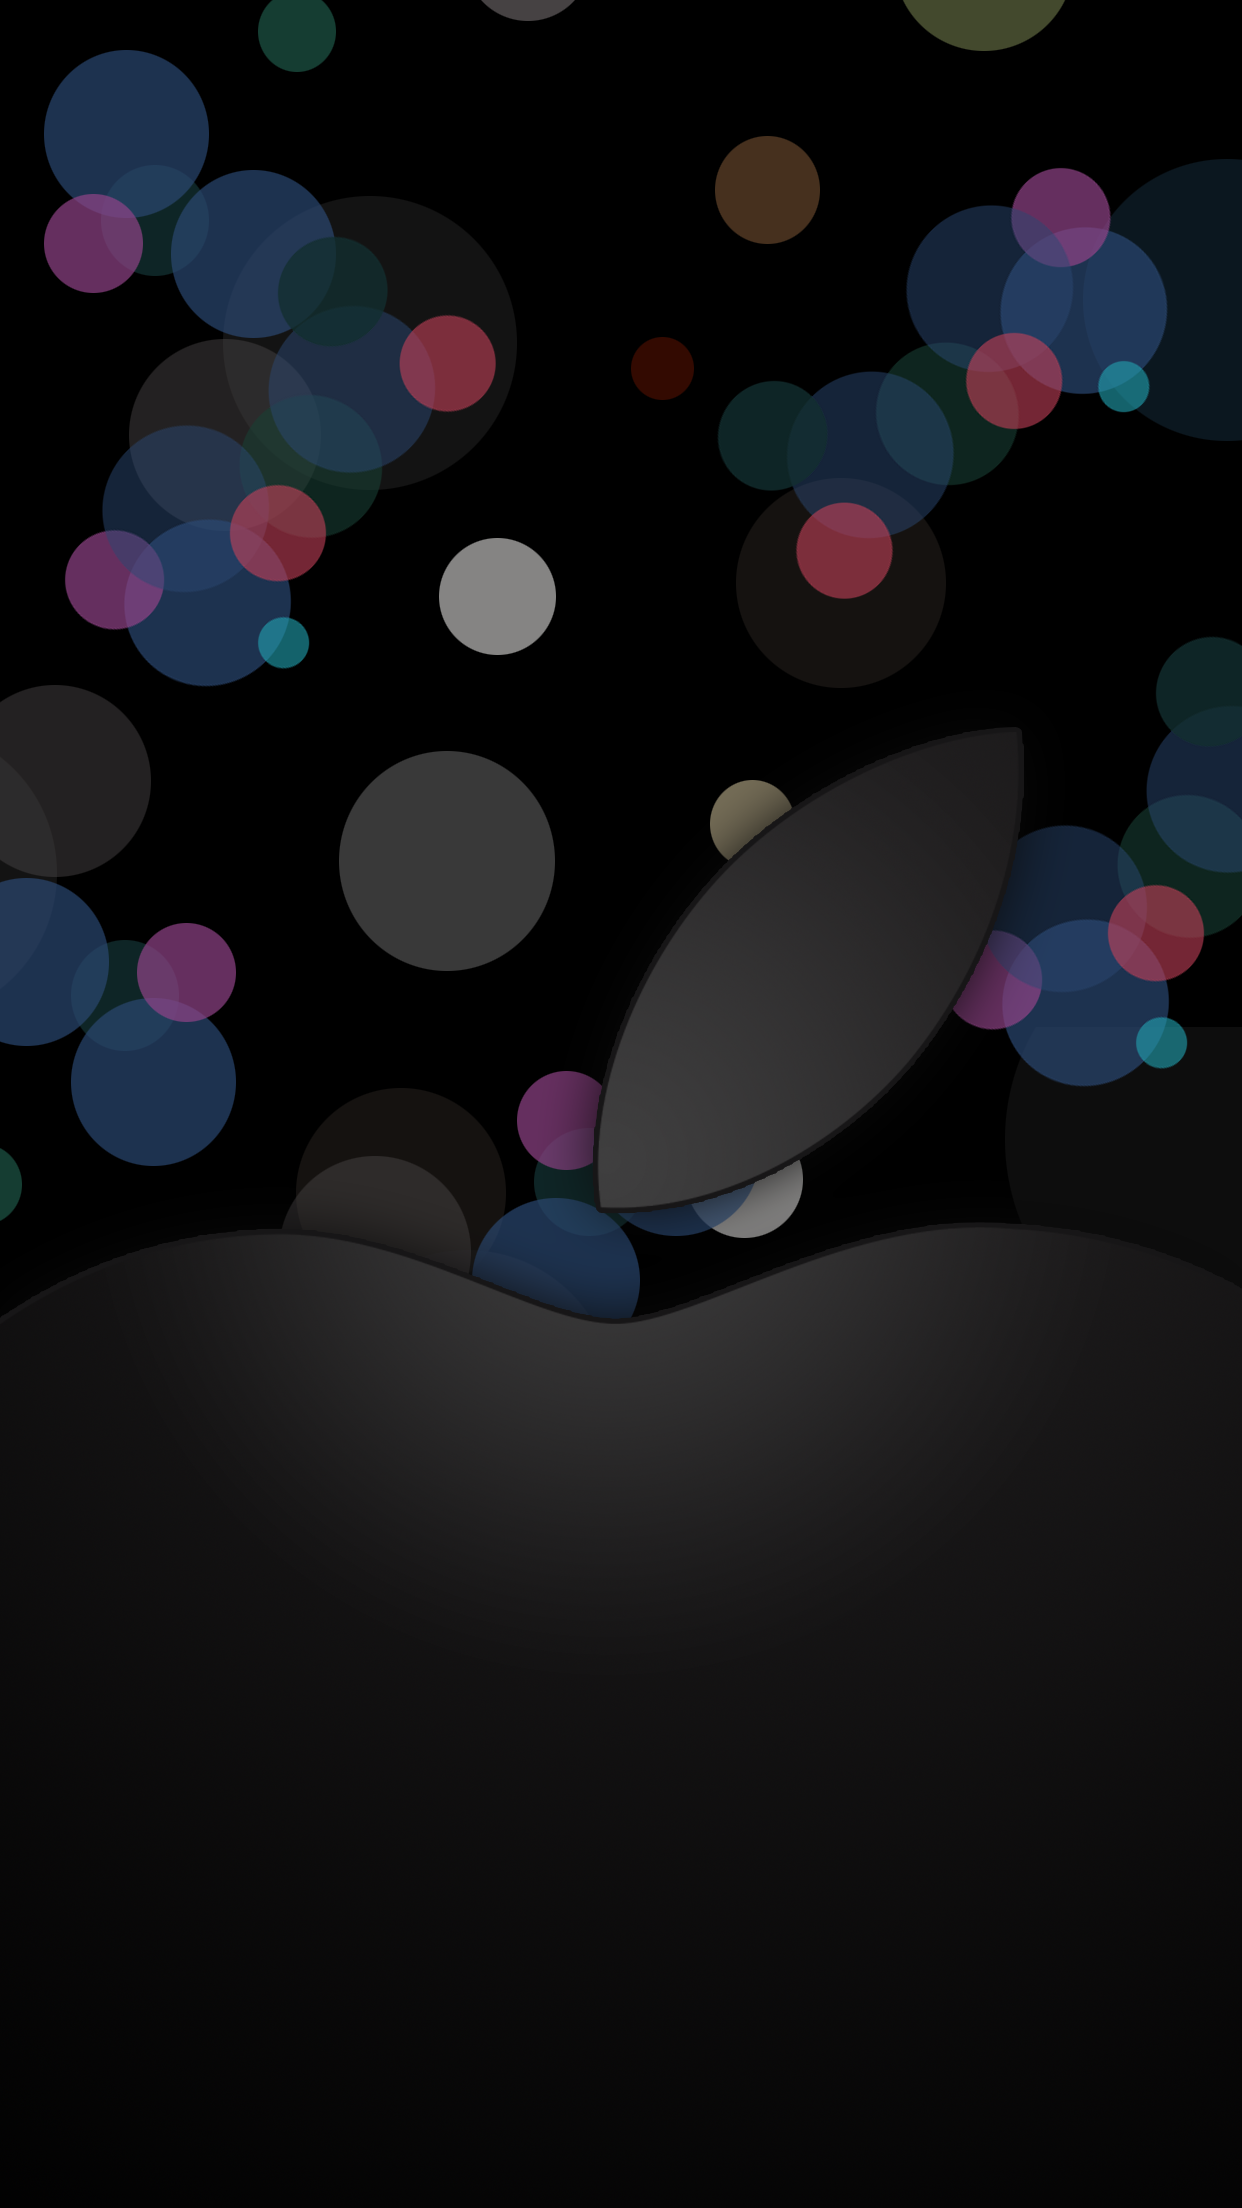 Apple-September-7-event-wallpaper-ar7-custom1